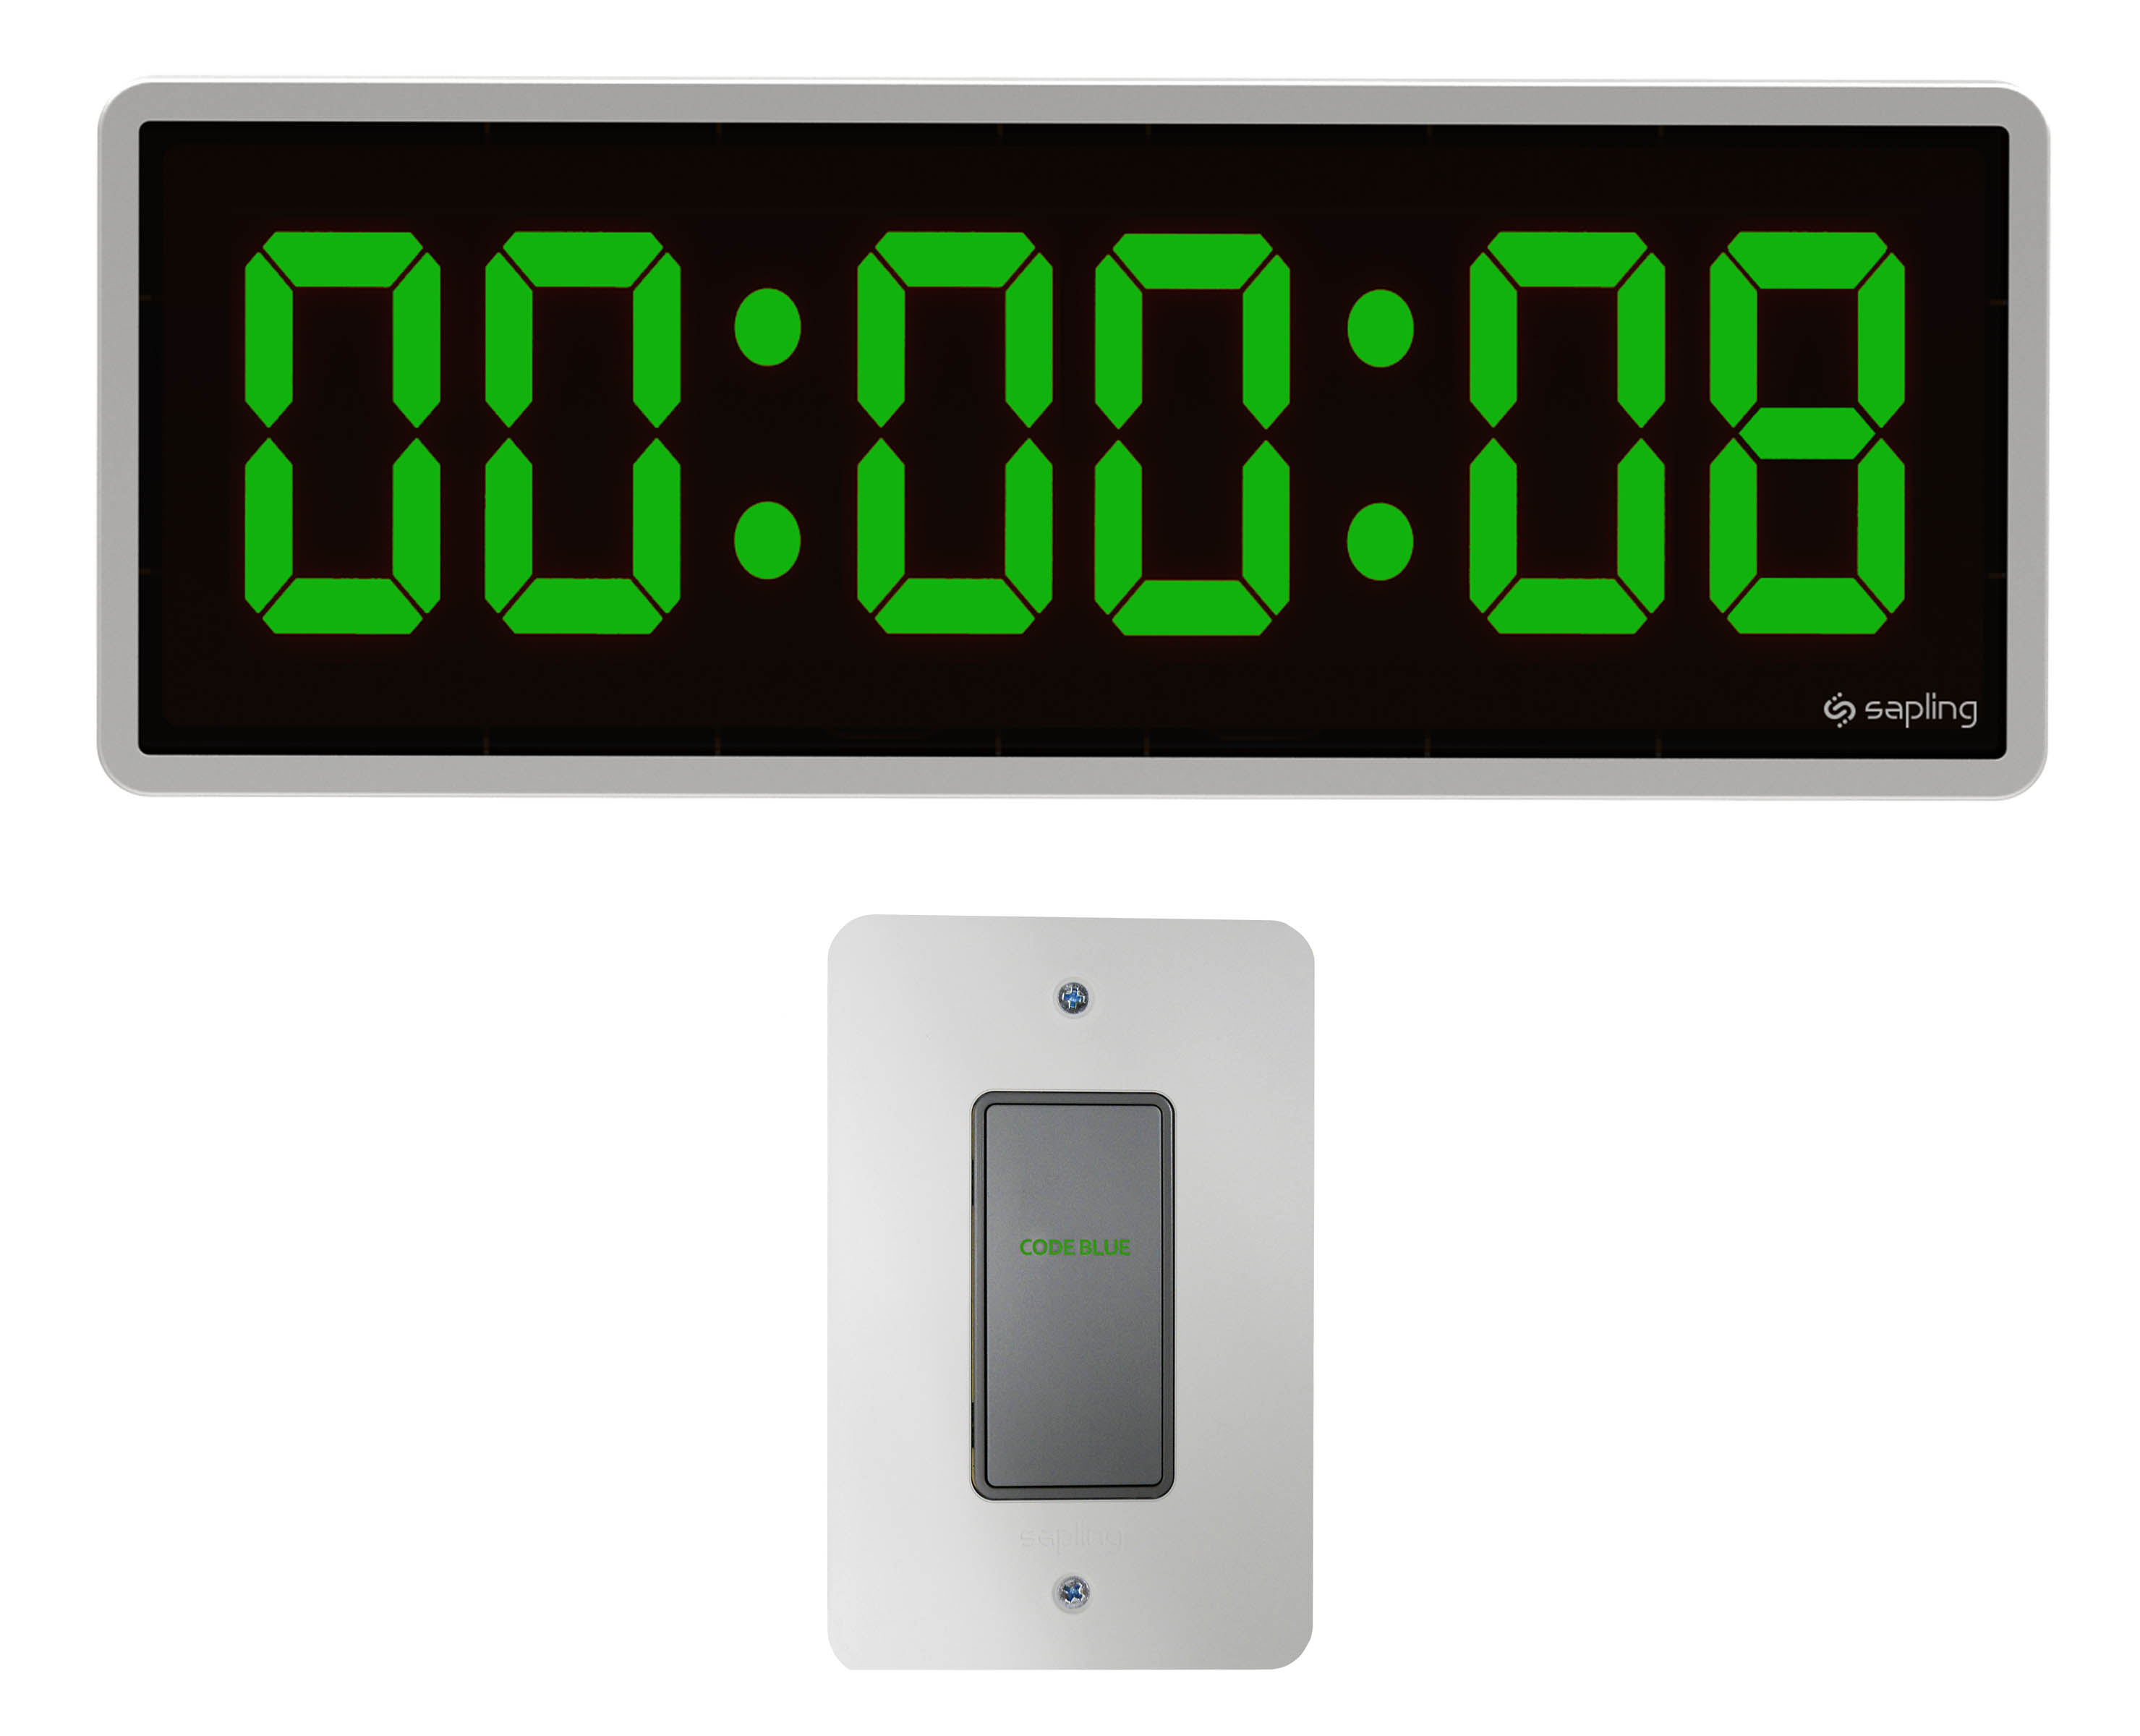 Уровень таймер. Таймер+секундомер цифровой, 38.2022.01. 70-0530 Rexant цифровые часы с таймером обратного отсчета RX-100а. Секундомер таймер цифровой электронный белый. Таймер с часами.